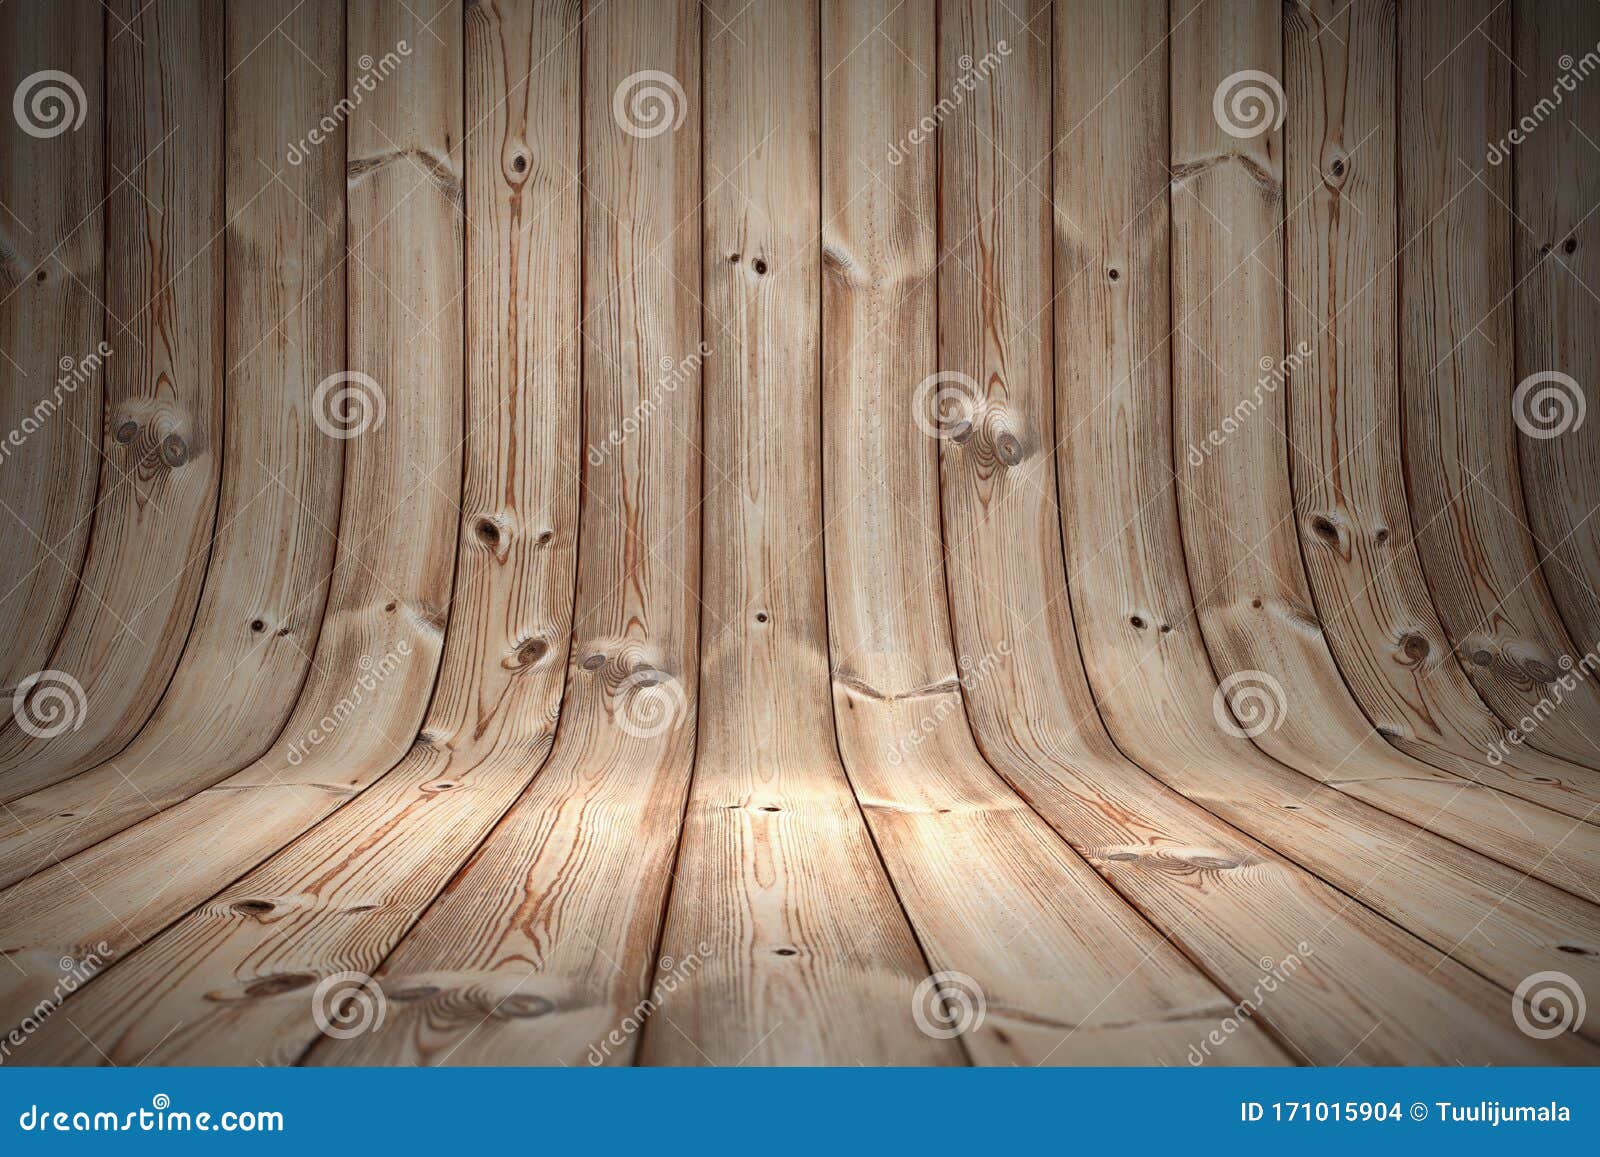 Khung cảnh nền gỗ trong studio sẽ mang lại cho bạn một bức ảnh cực chất và ấn tượng. Hãy ngắm nhìn các chi tiết độc đáo trên các tấm gỗ và khám phá những góc chụp đẹp nhất.